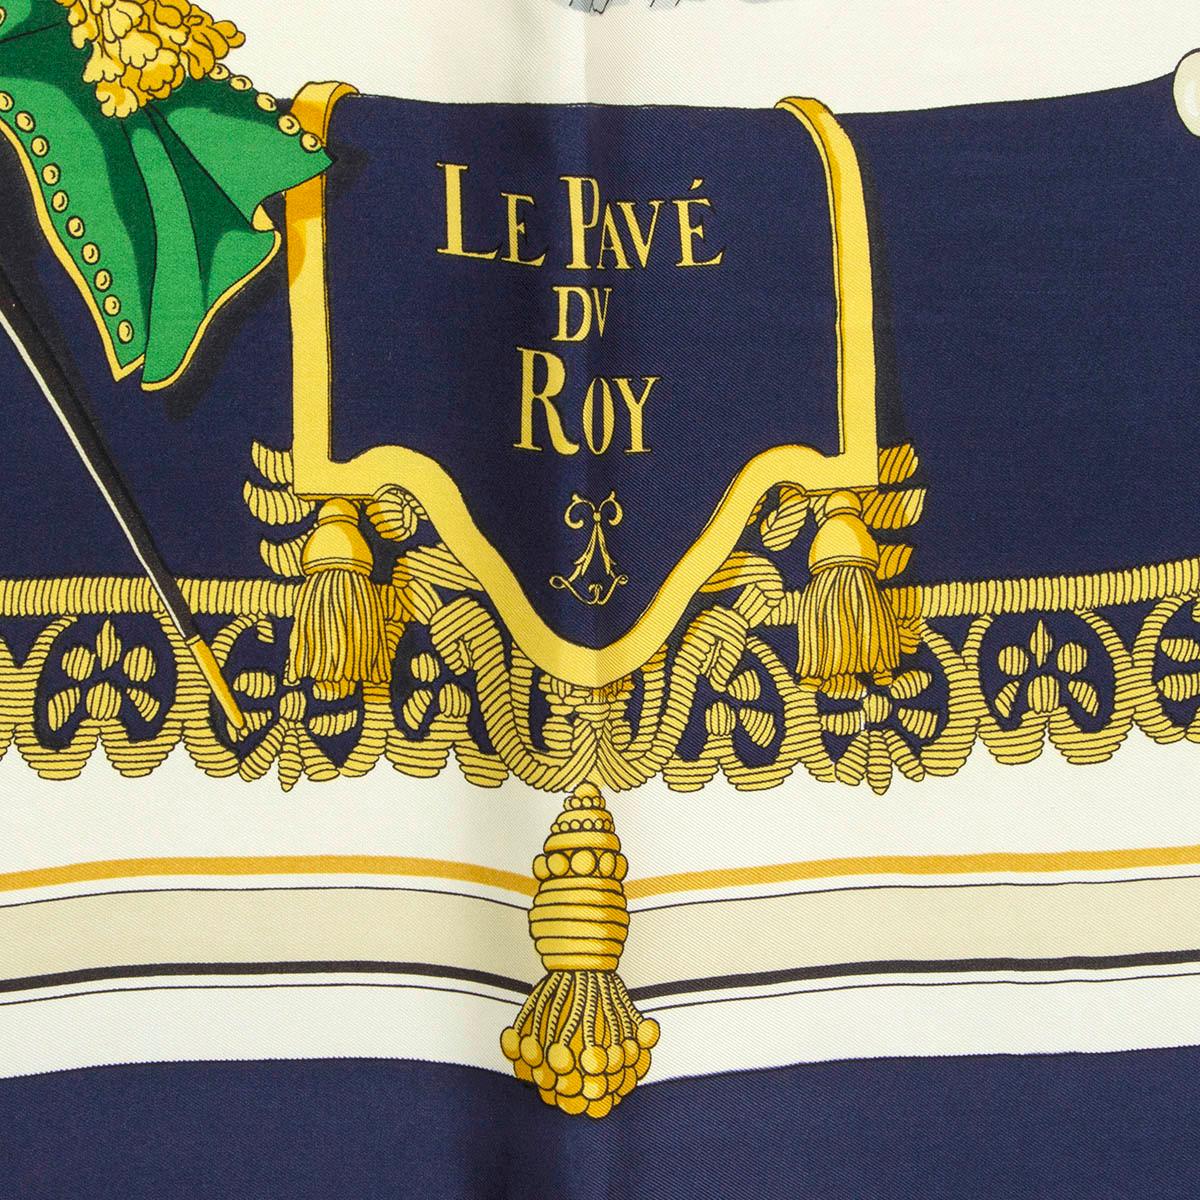 100% authentischer Hermes 'Le Pavé Du Roy 90' Schal aus beigem Seiden-Twill (100%) mit marineblauer Bordüre und Details in Altgold, Grün und Grau. Wurde getragen mit schwachen Spuren durch-out. Insgesamt in gutem